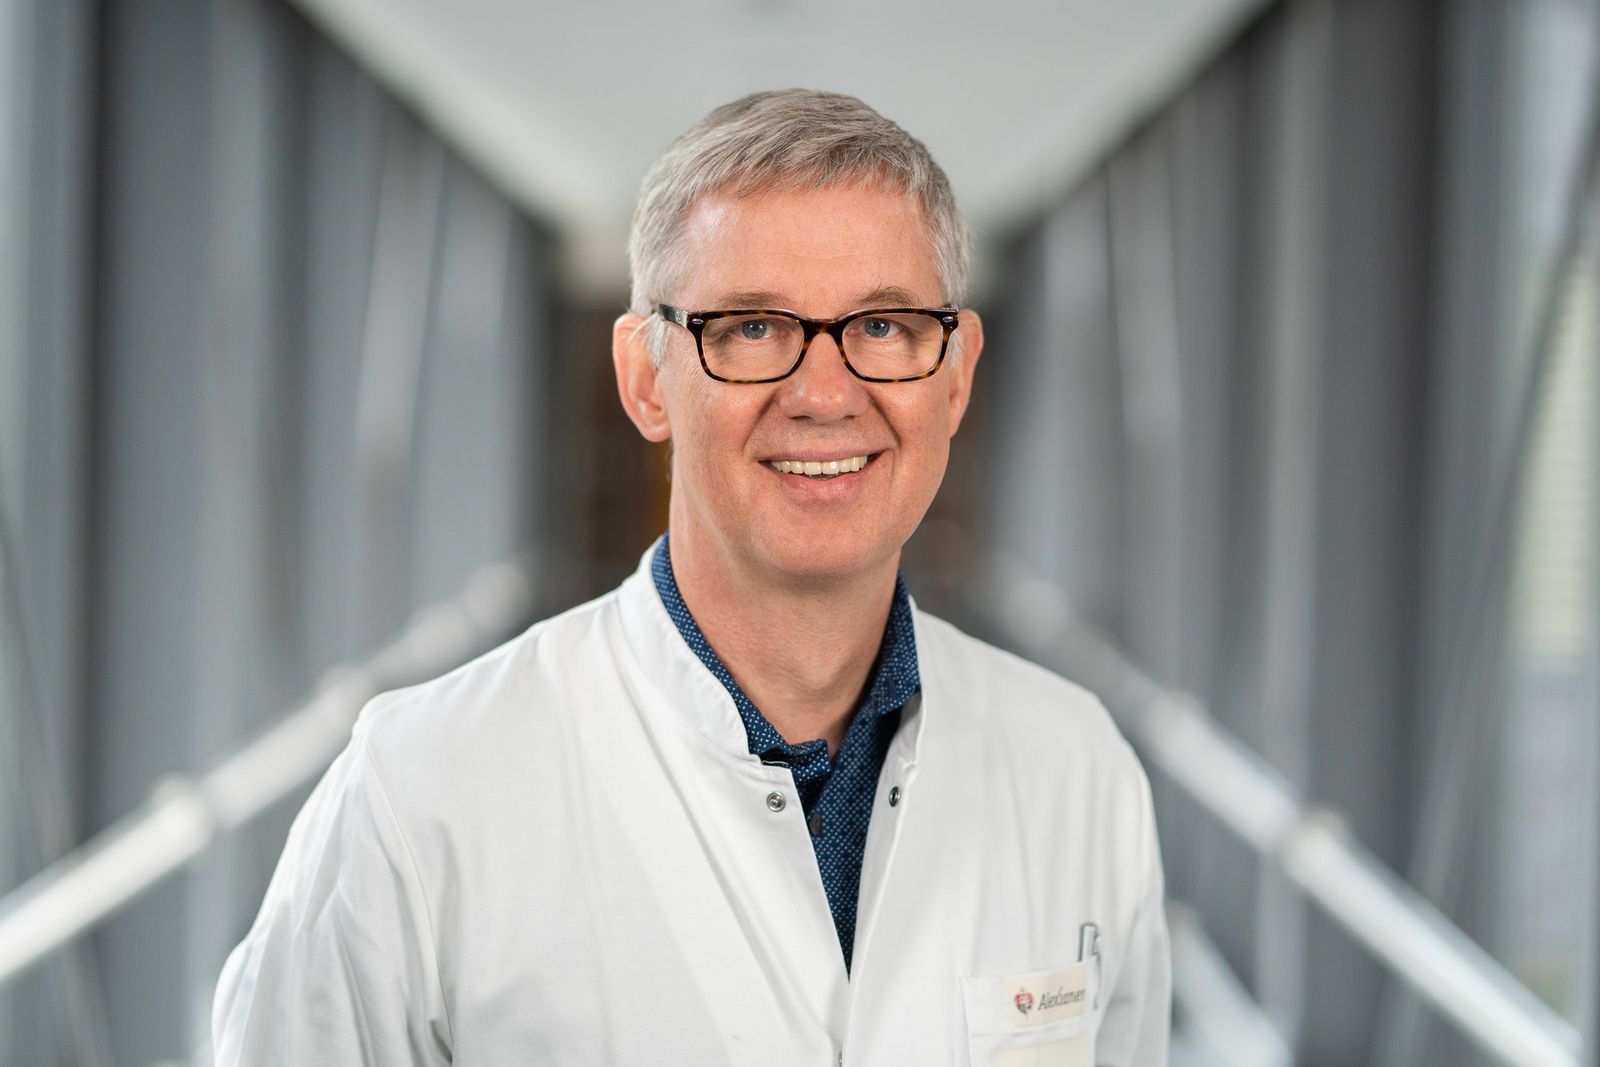  Facharzt für Innere Medizin mit dem Schwerpunkt Gastroenterologie Dr. med. Daniel Wiens